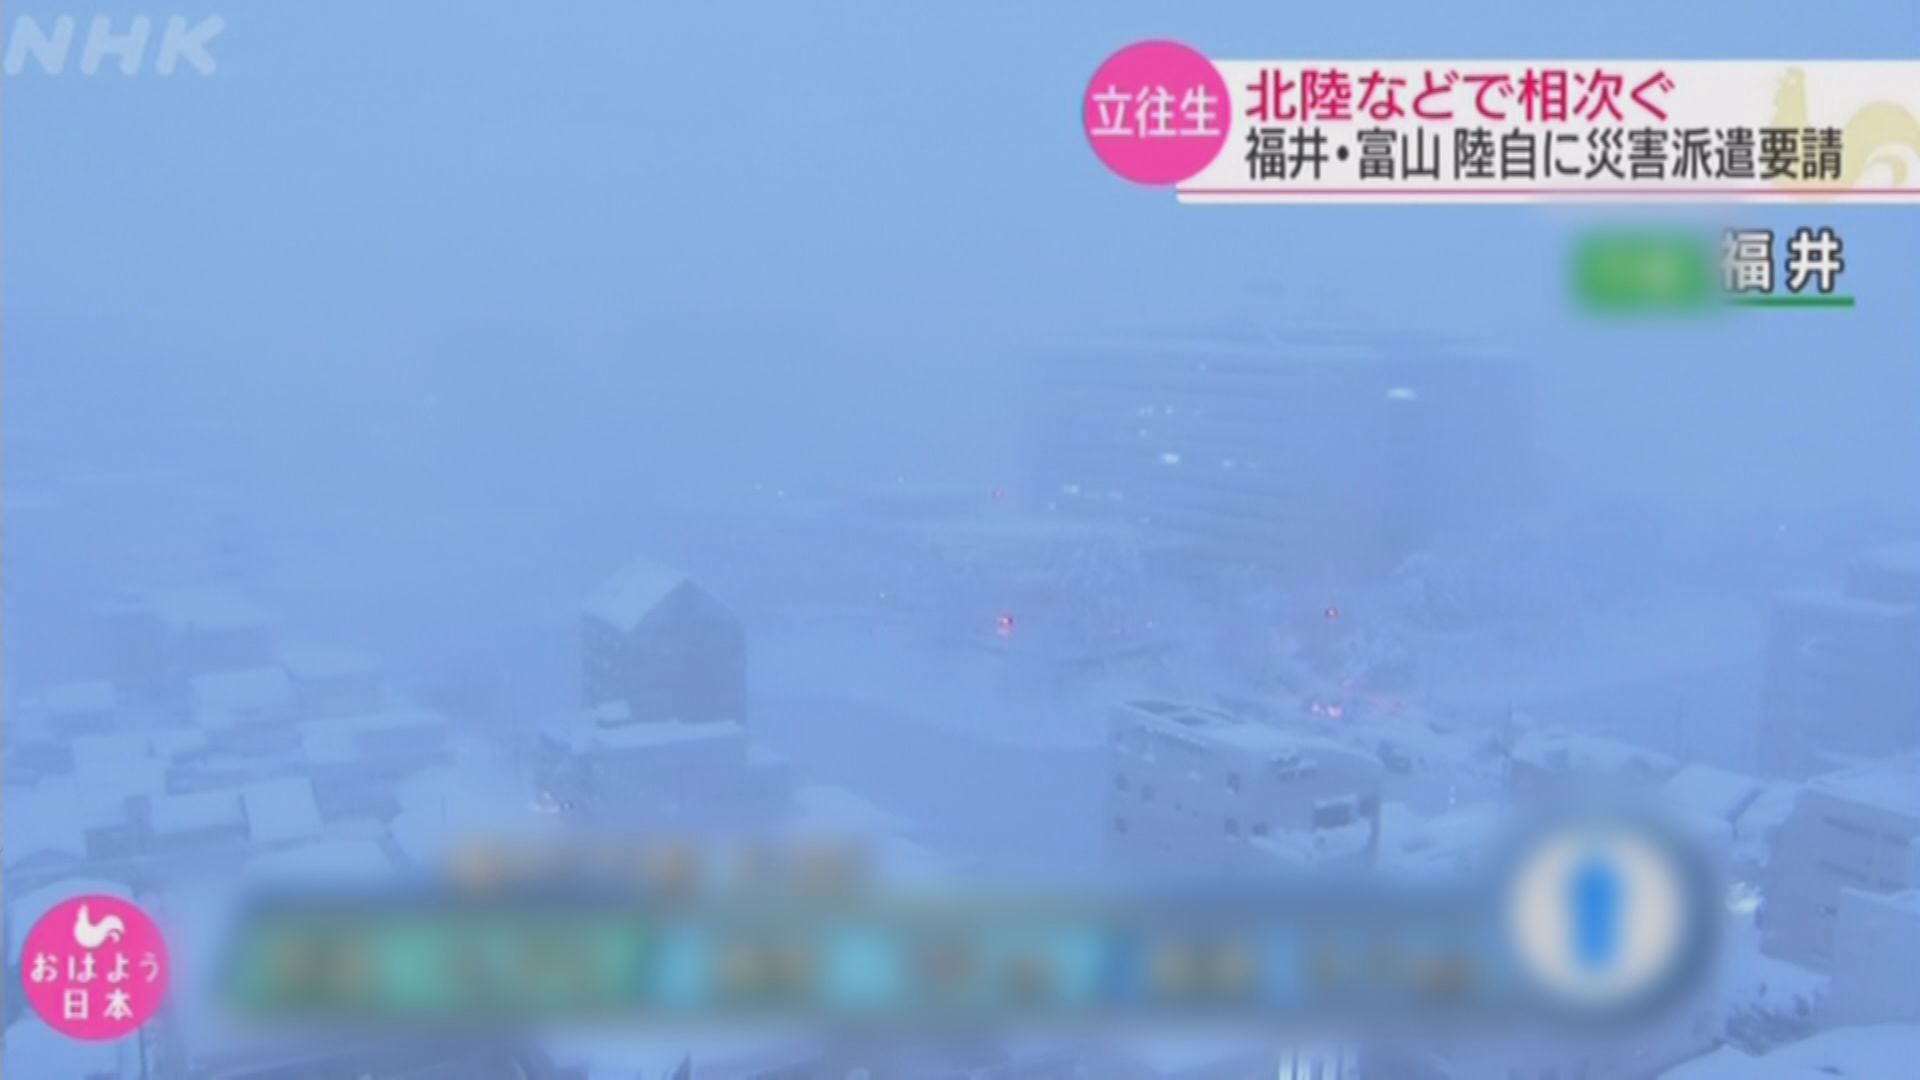 日本西部沿岸普降大雪陸空交通受影響